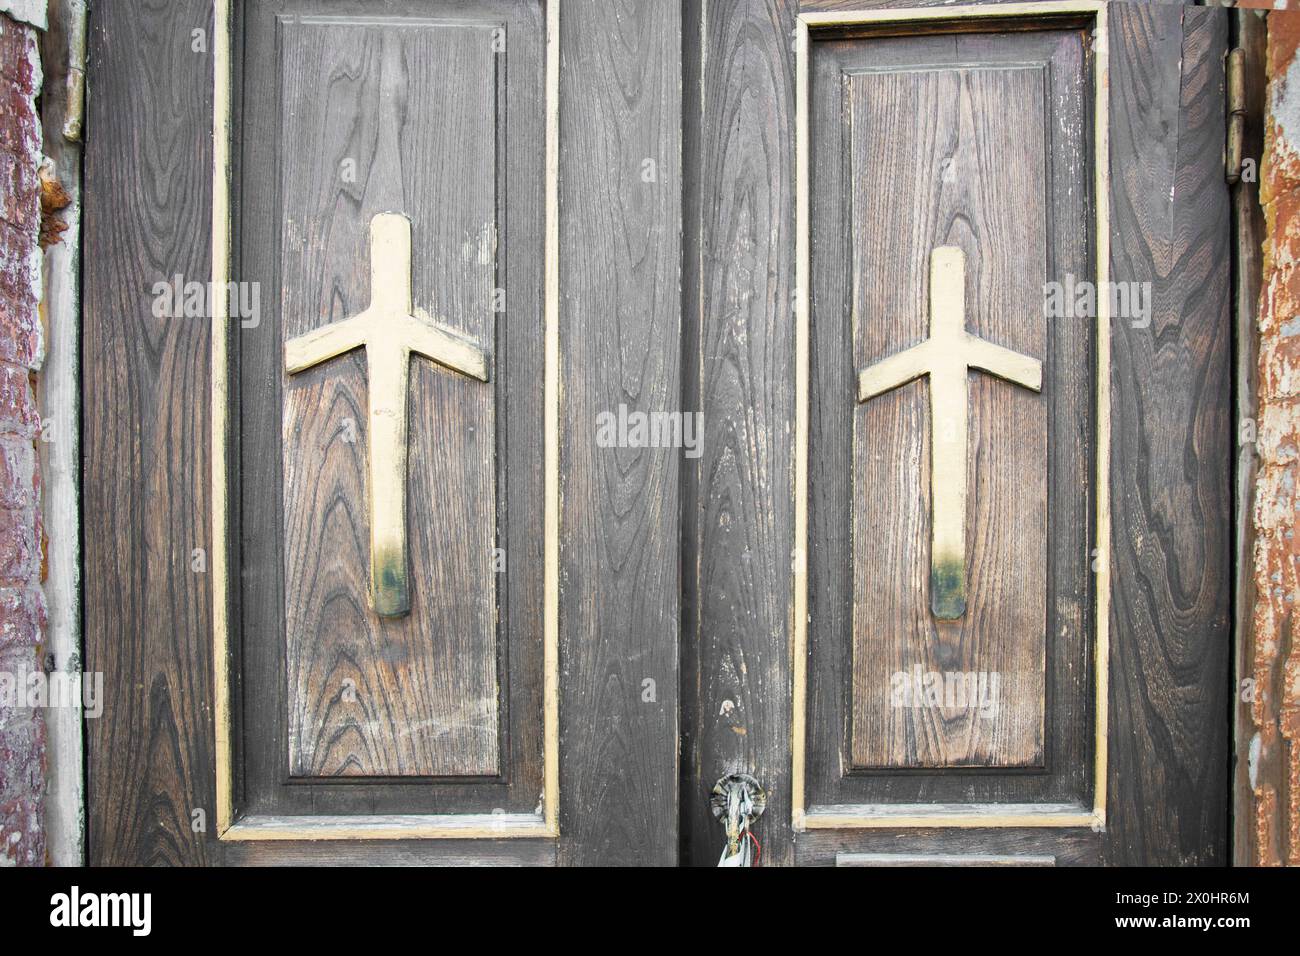 Croix de Saint Nino sur porte en bois. Gros plan . Croix chrétienne géorgienne. Prise de vue horizontale Banque D'Images